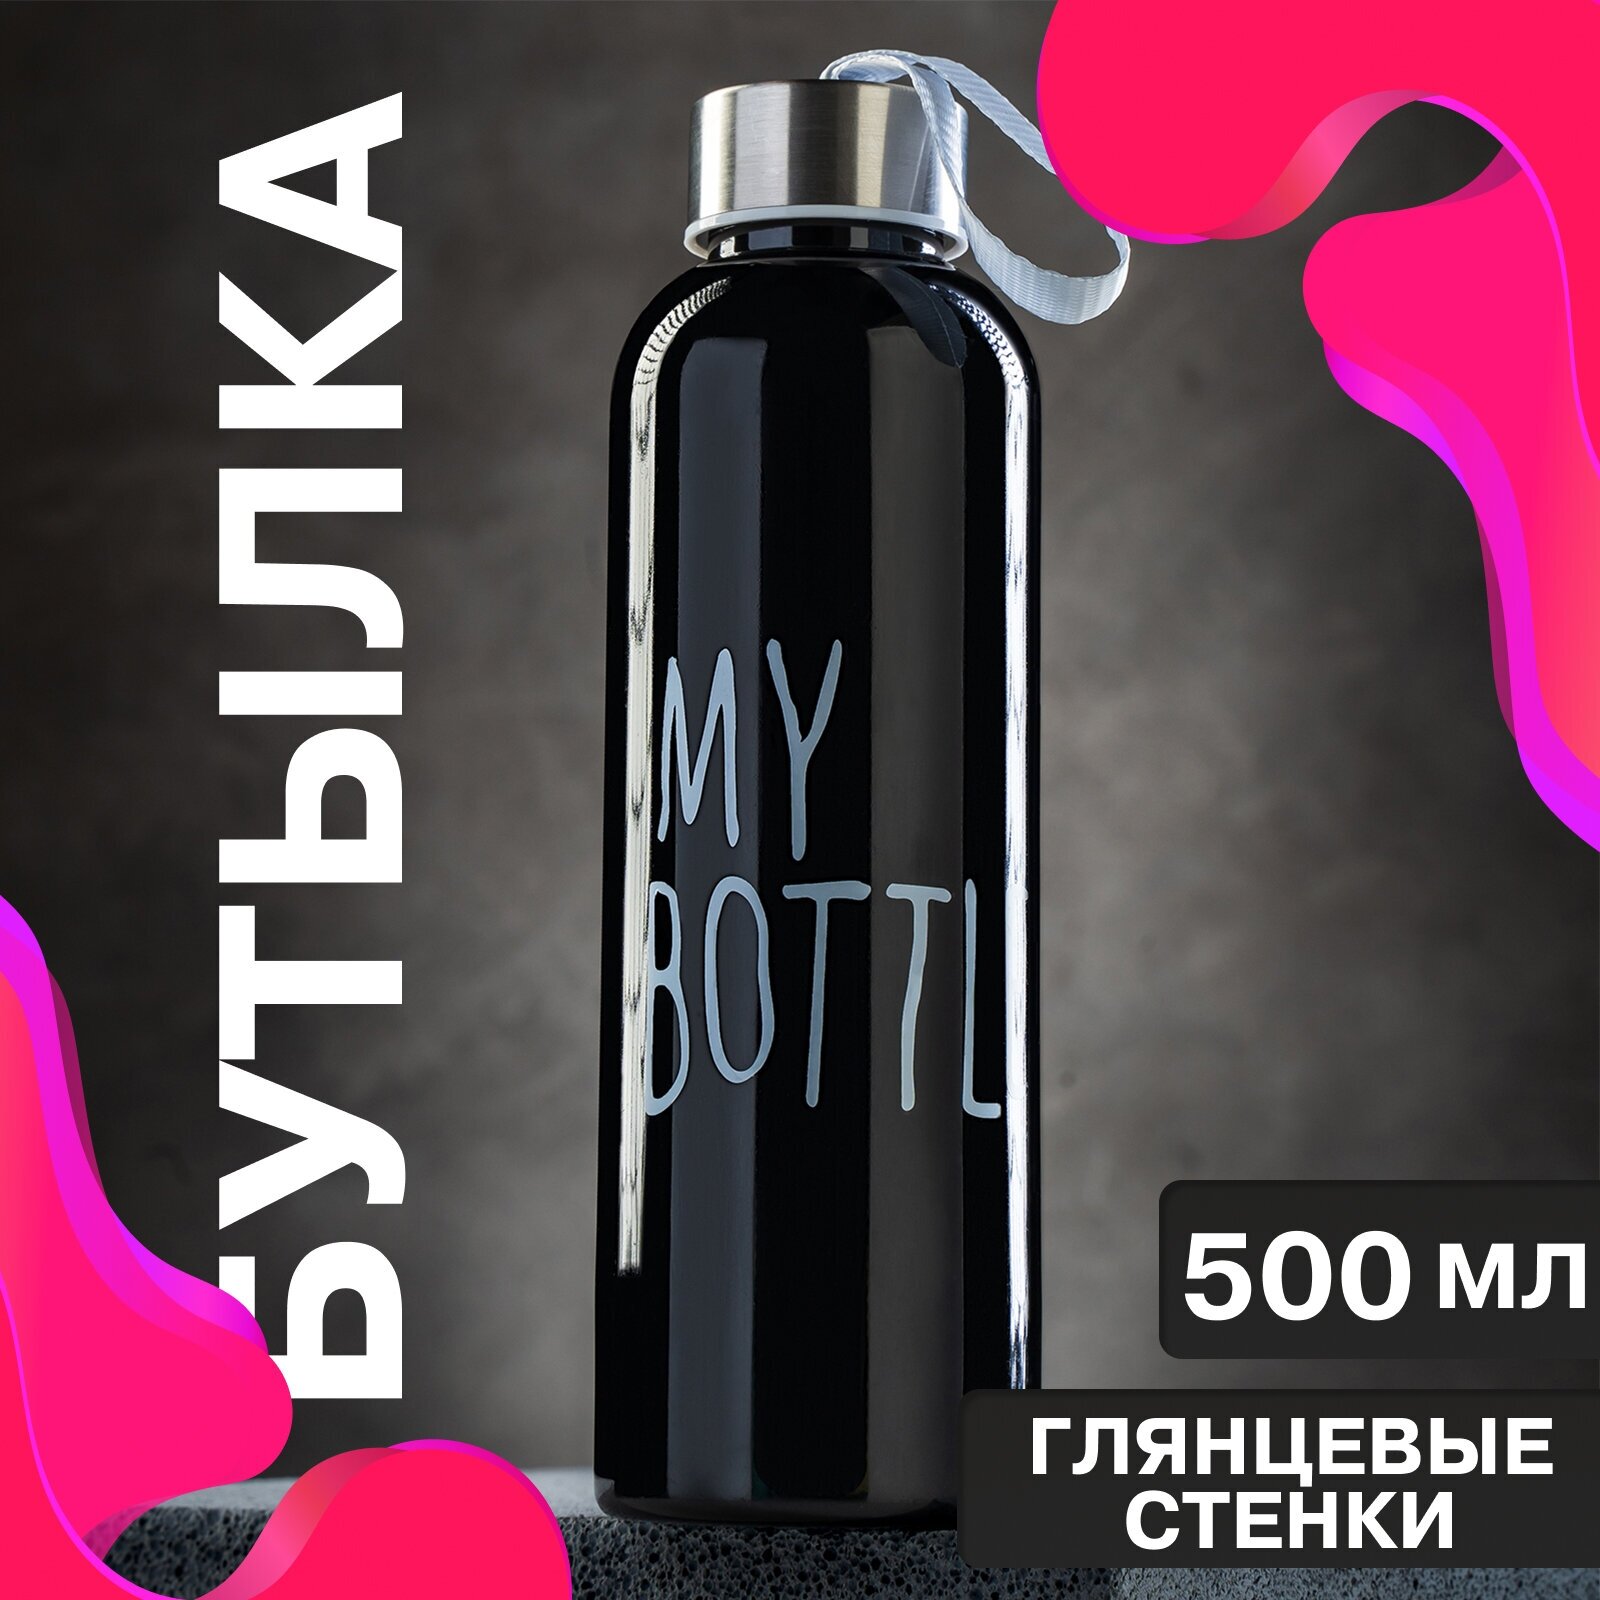 Бутылка для воды "My bottle", объем 500 мл, размер 20 х 6.5 см, цвет черный